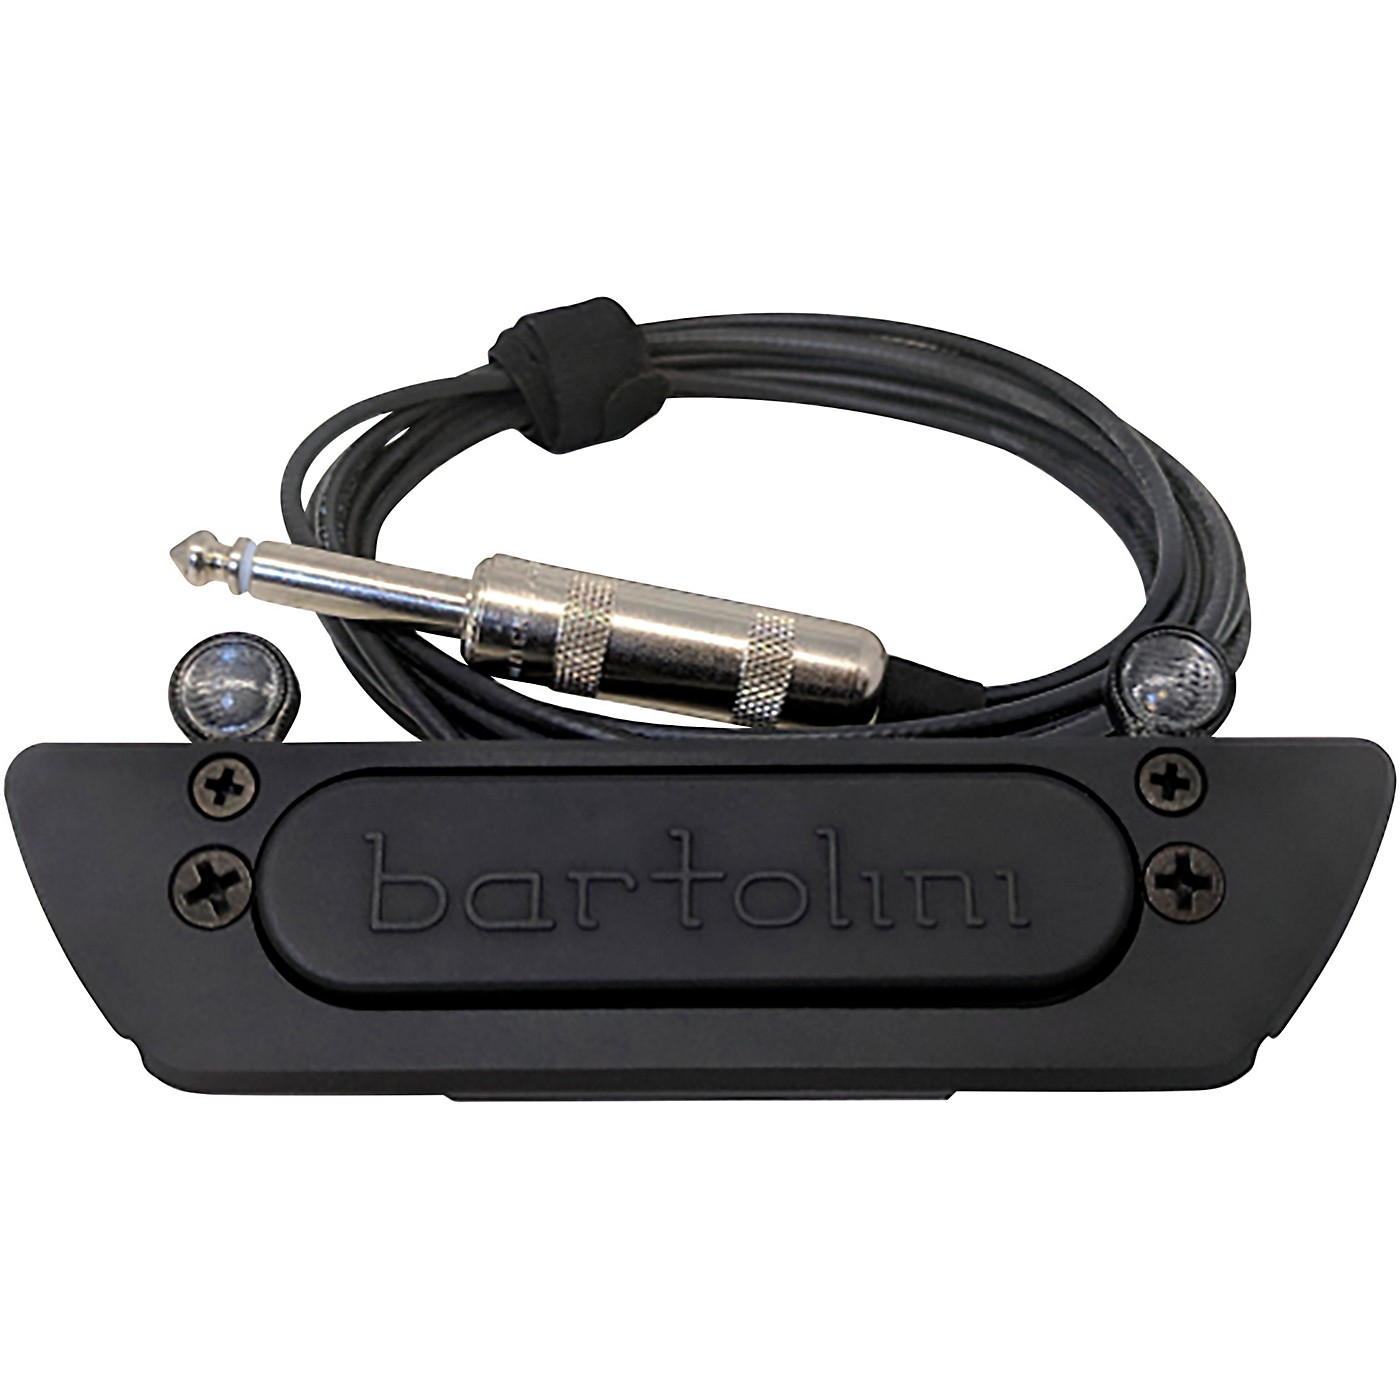 Bartolini 3AV Acoustic Guitar Soundhole Pickup thumbnail